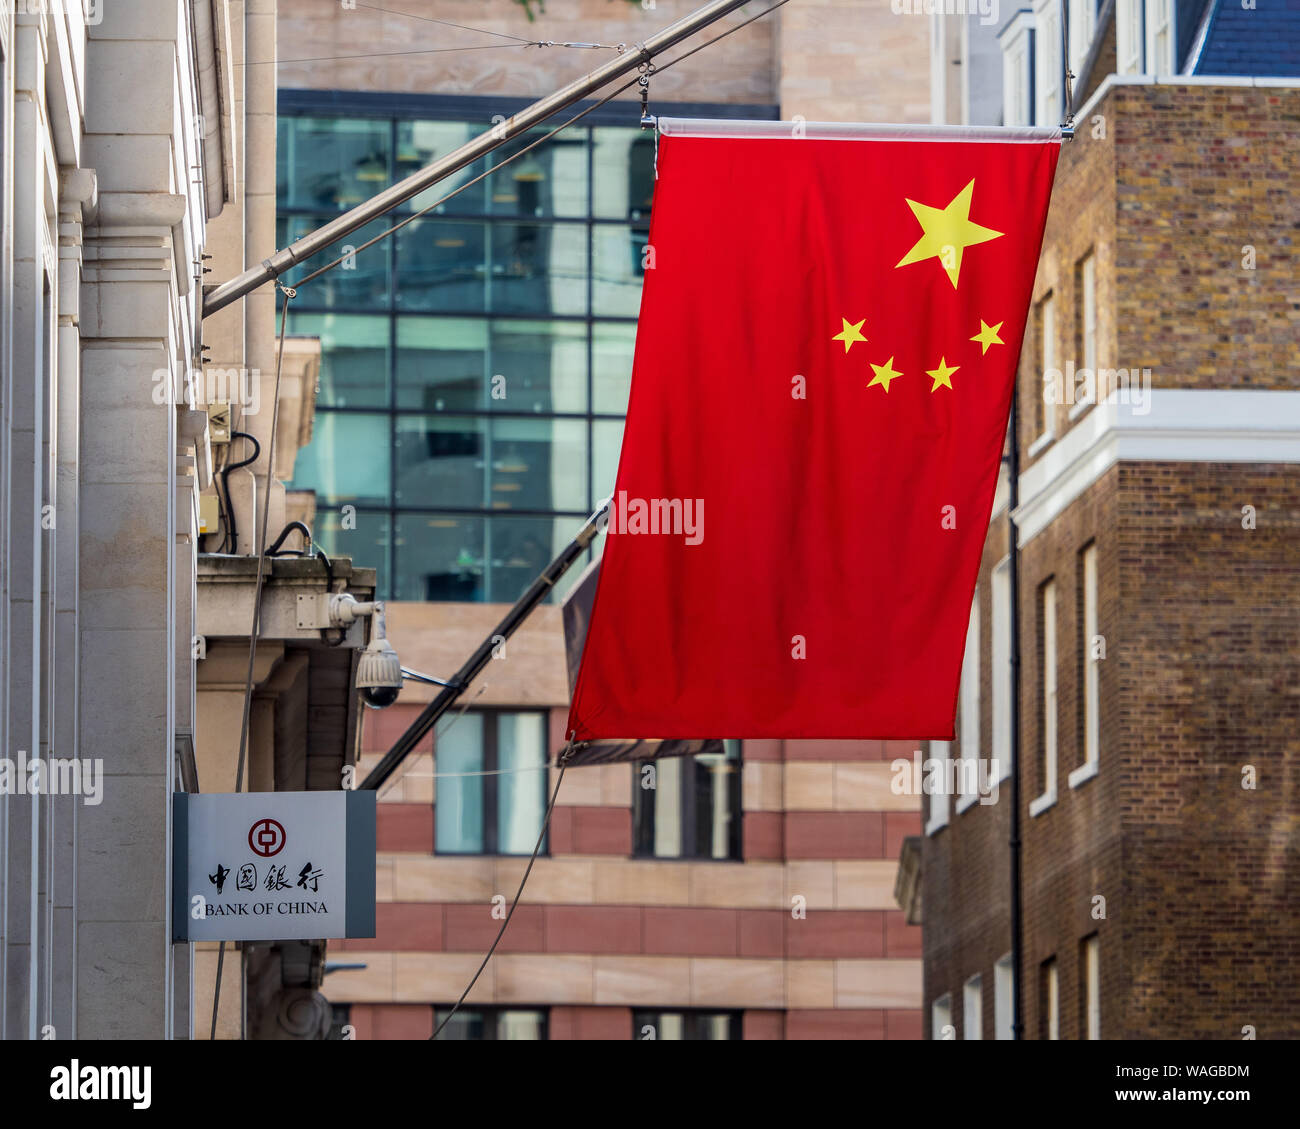 Les drapeaux chinois à l'extérieur de la Banque de Chine Londres - drapeaux chinois marquer une présence croissante des banques chinoises dans la ville de Londres quartier financier. Banque D'Images